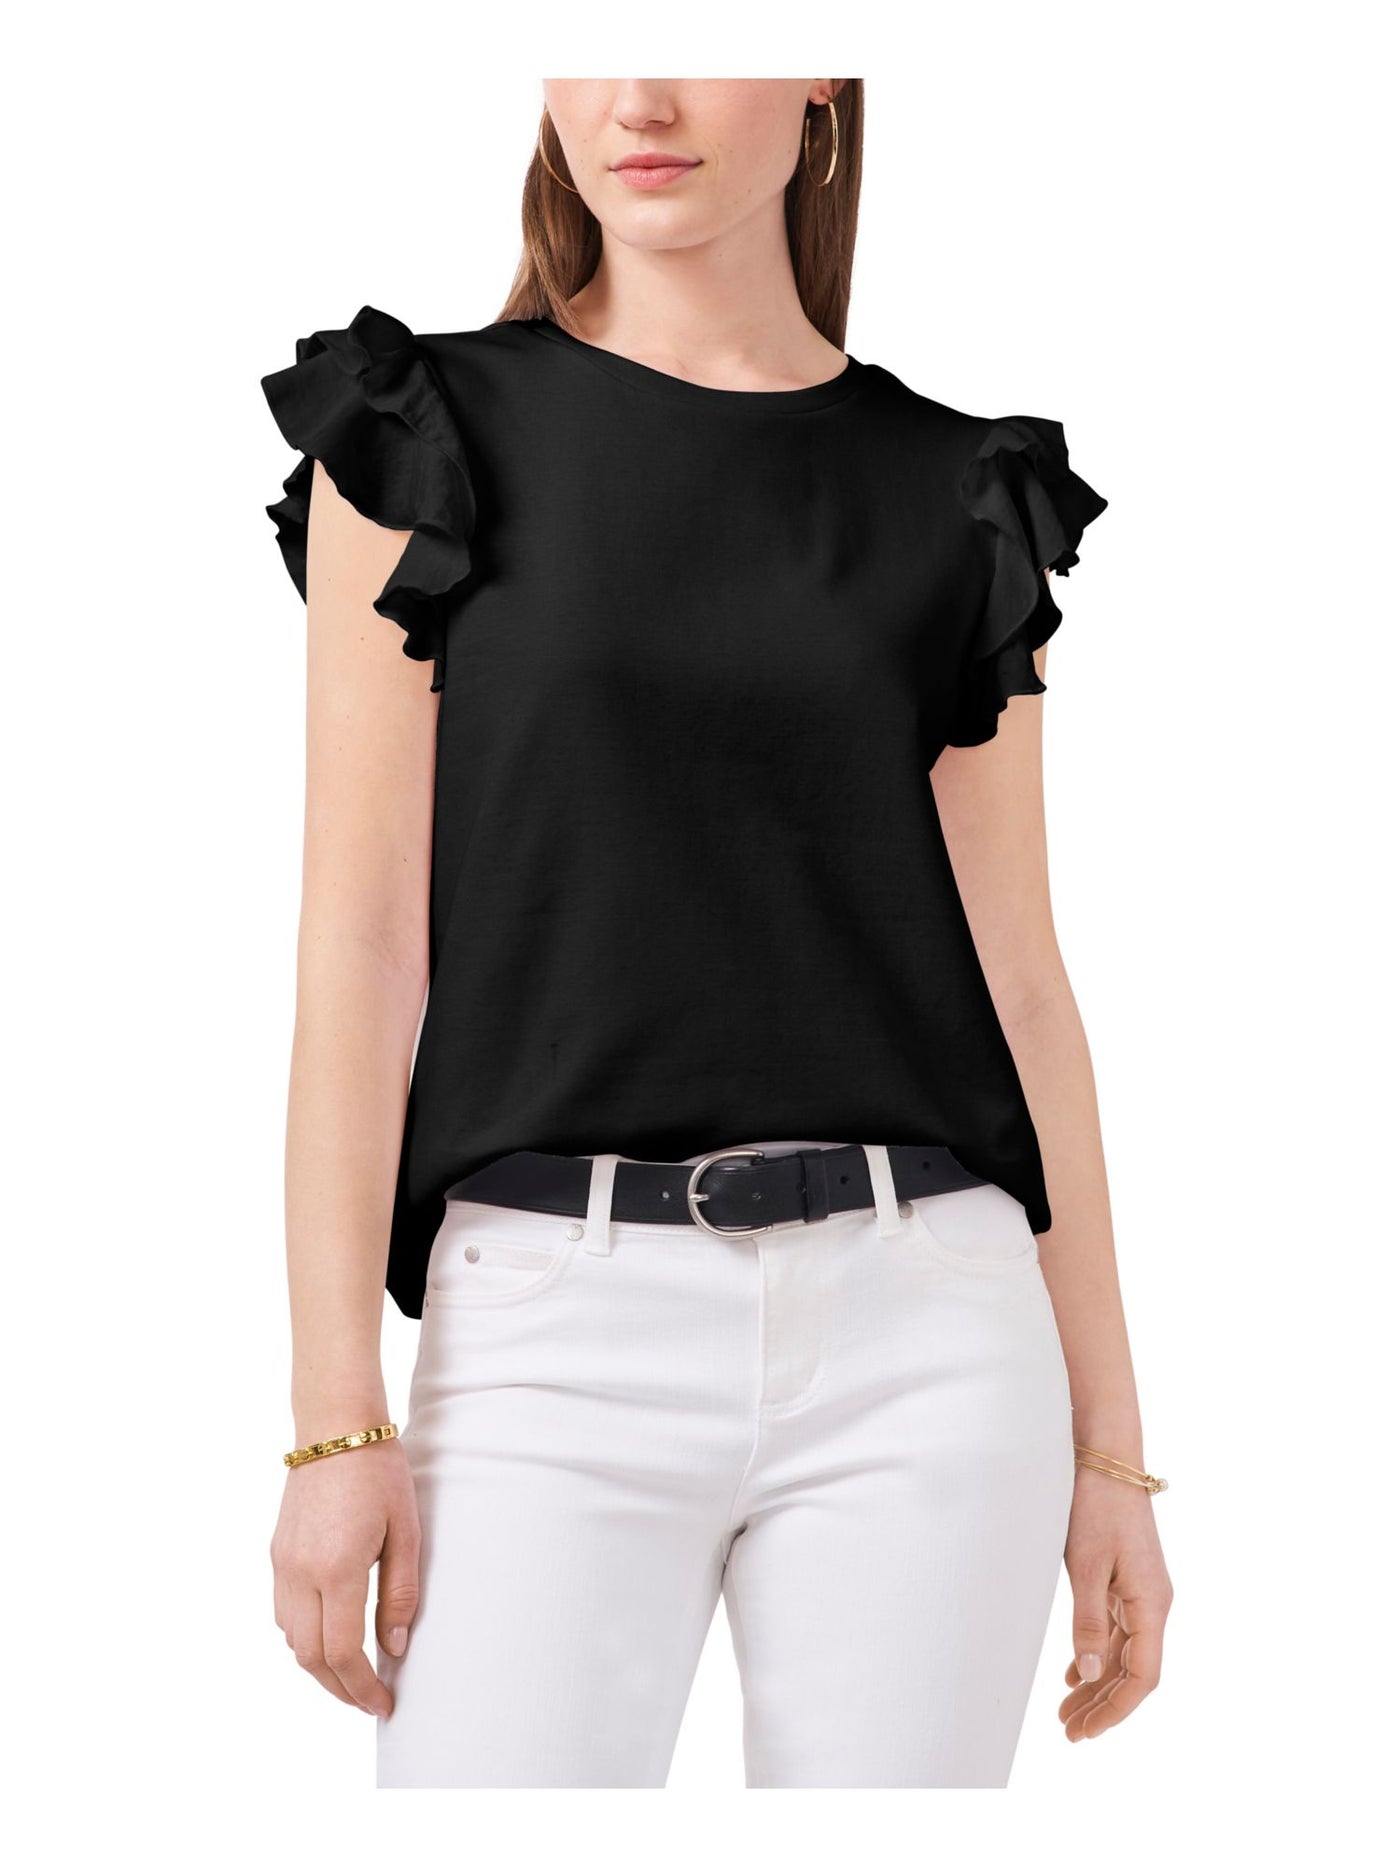 VINCE CAMUTO Womens Black Flutter Sleeve Jewel Neck T-Shirt XL